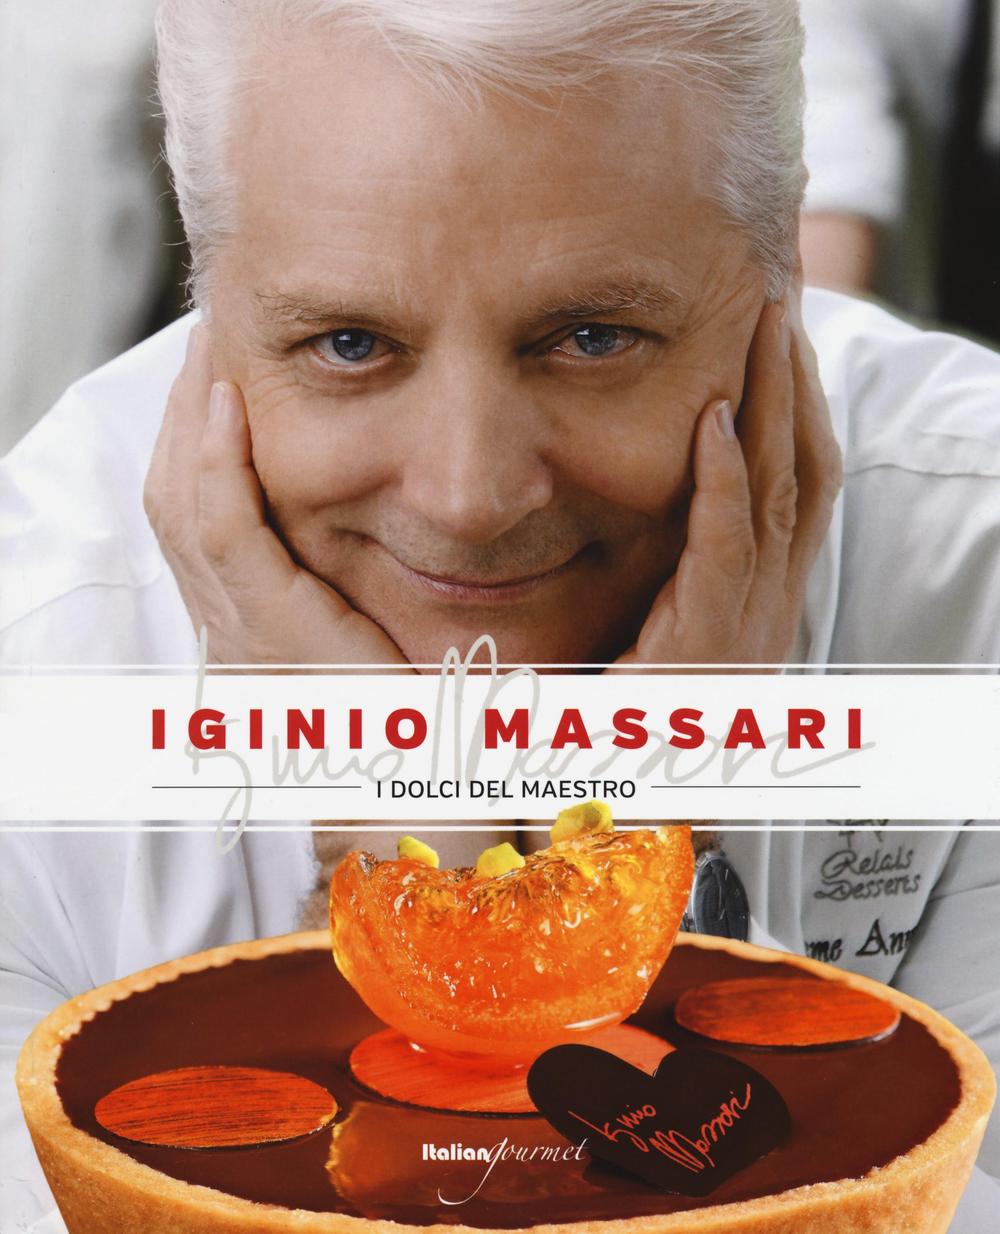 Libri Iginio Massari - I Dolci Del Maestro NUOVO SIGILLATO, EDIZIONE DEL 01/01/2015 SUBITO DISPONIBILE